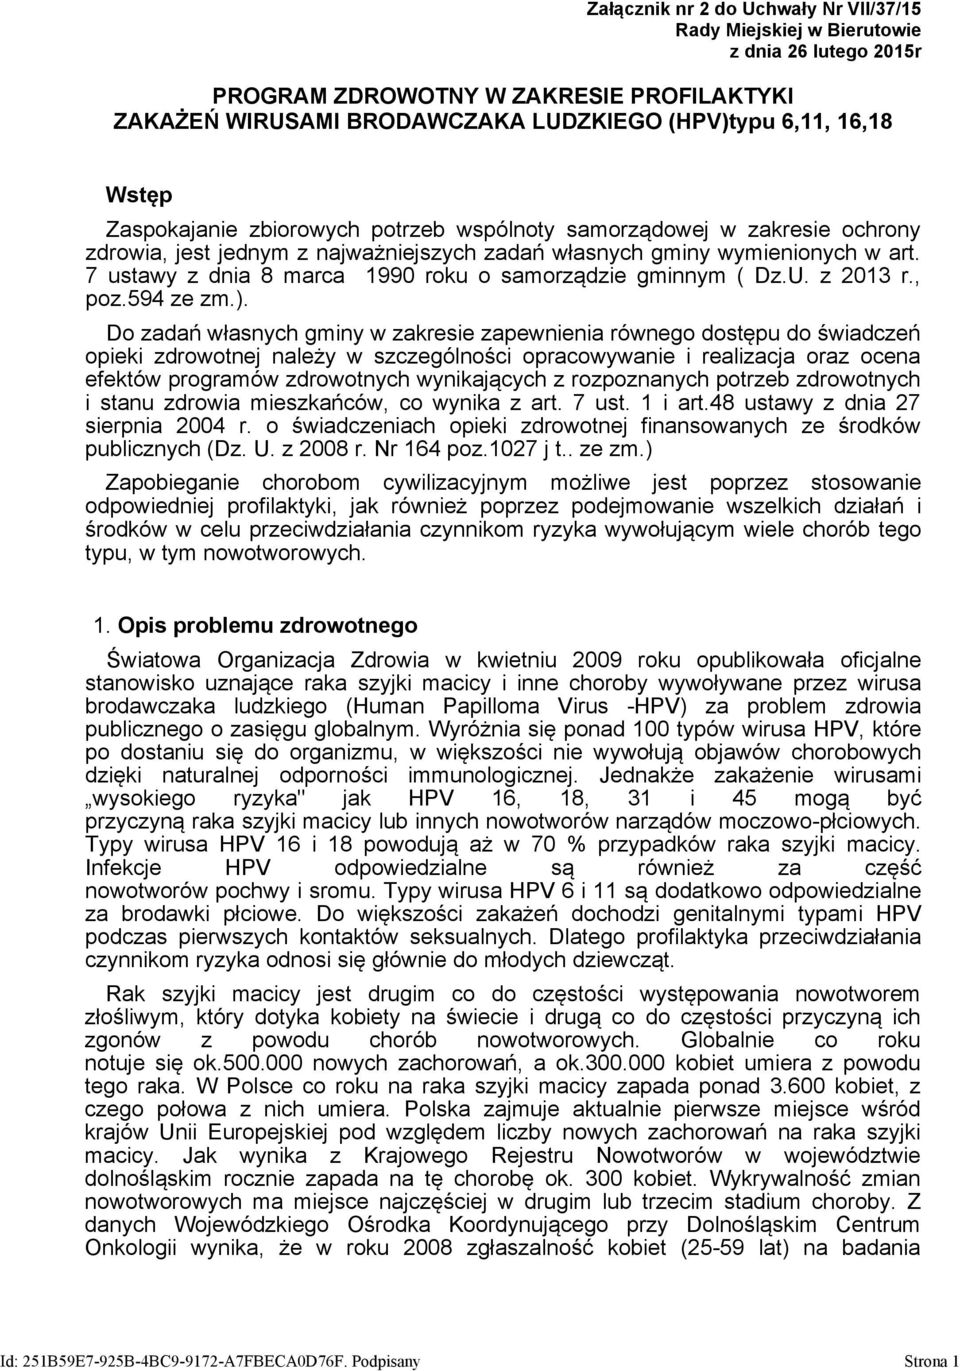 7 ustawy z dnia 8 marca 1990 roku o samorządzie gminnym ( Dz.U. z 2013 r., poz.594 ze zm.).